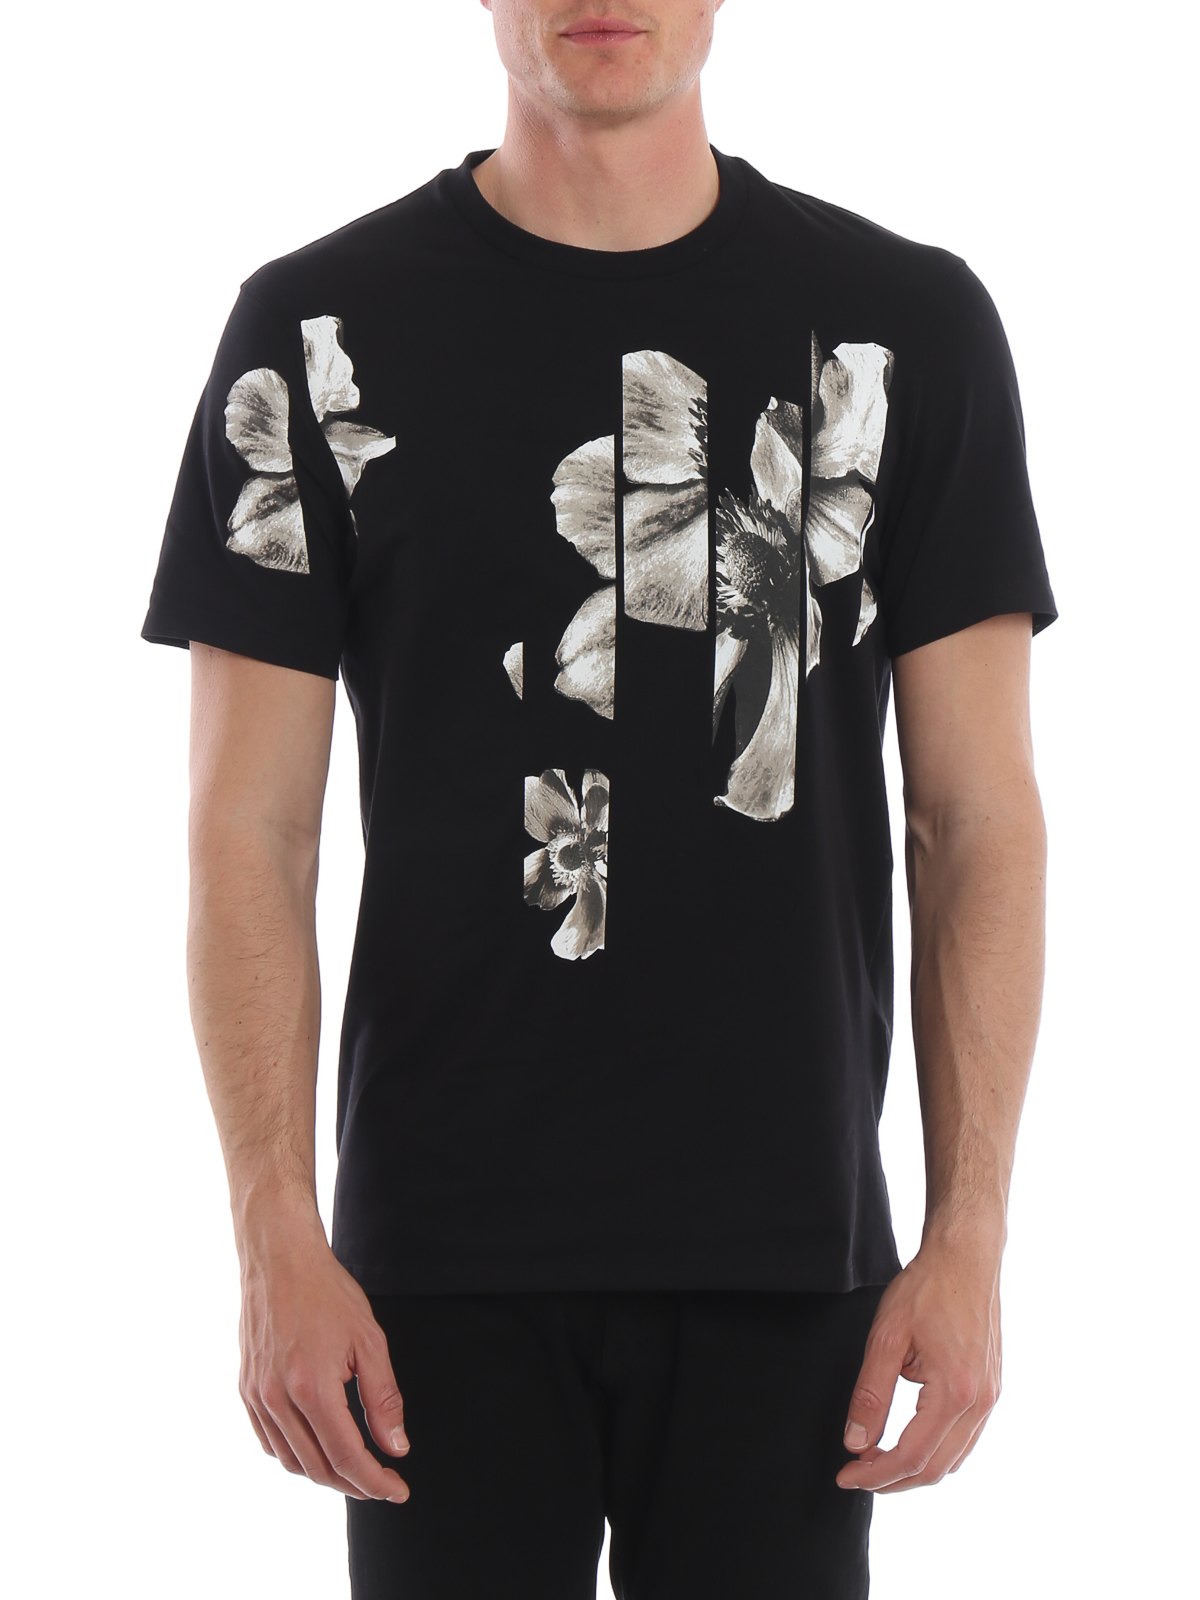 Tシャツ Neil Barrett - Tシャツ - 黒 - BJT533BL560S2257 | iKRIX.com